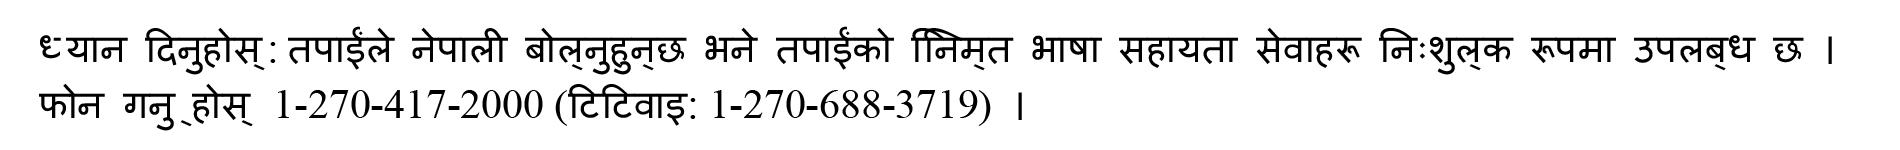 Nepali helpline text